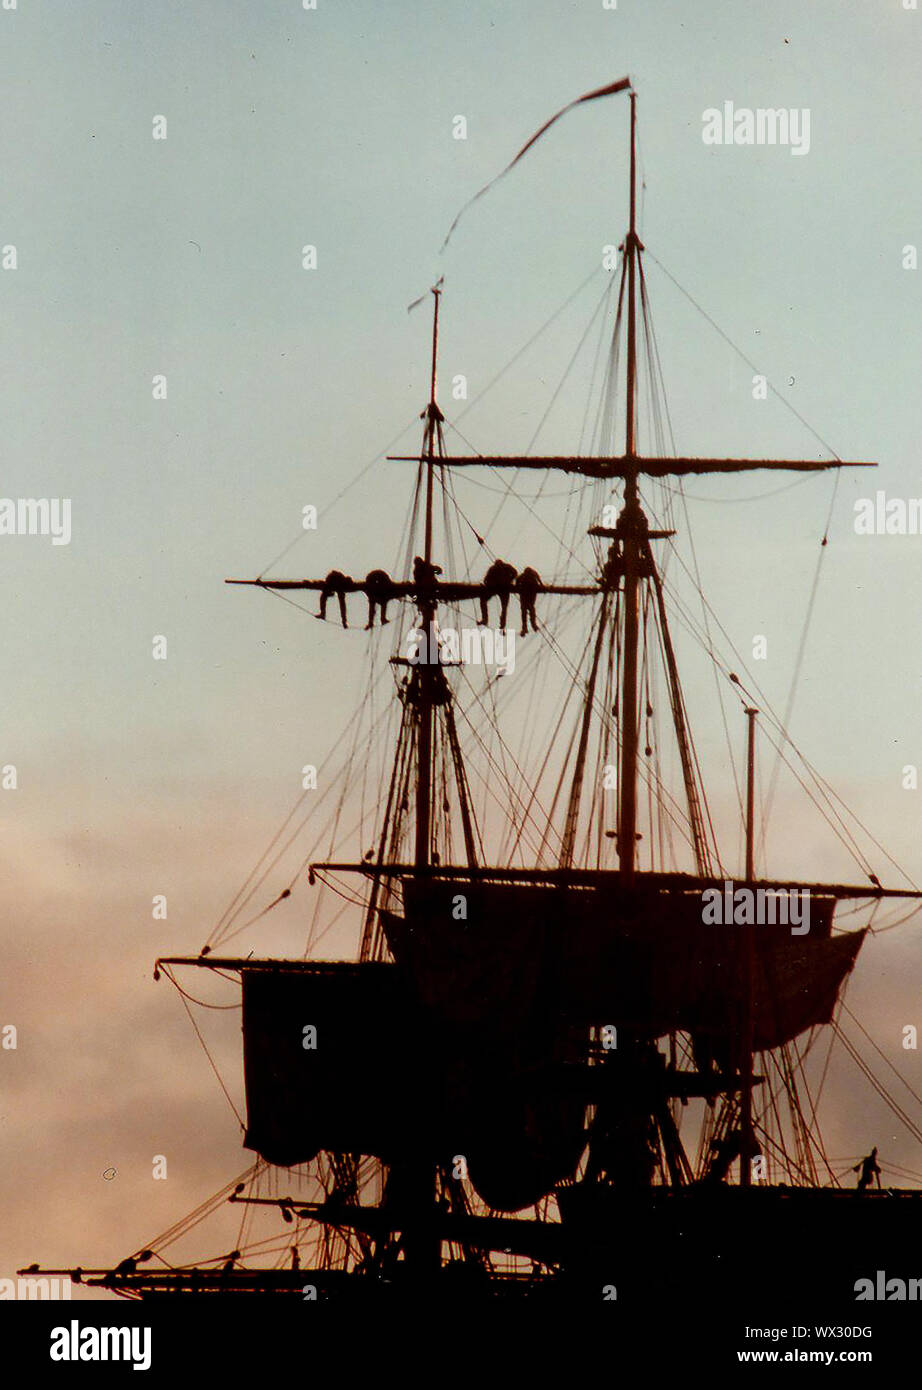 Eine silhouette Foto von Matrosen arbeiten an der Takelage eines modernen Segelschiff (Abschleppen/Senken der Segel) in der Dämmerung während des Besuchs des Bemühen, Whitby, Yorkshire, England im Jahr 2000. Stockfoto